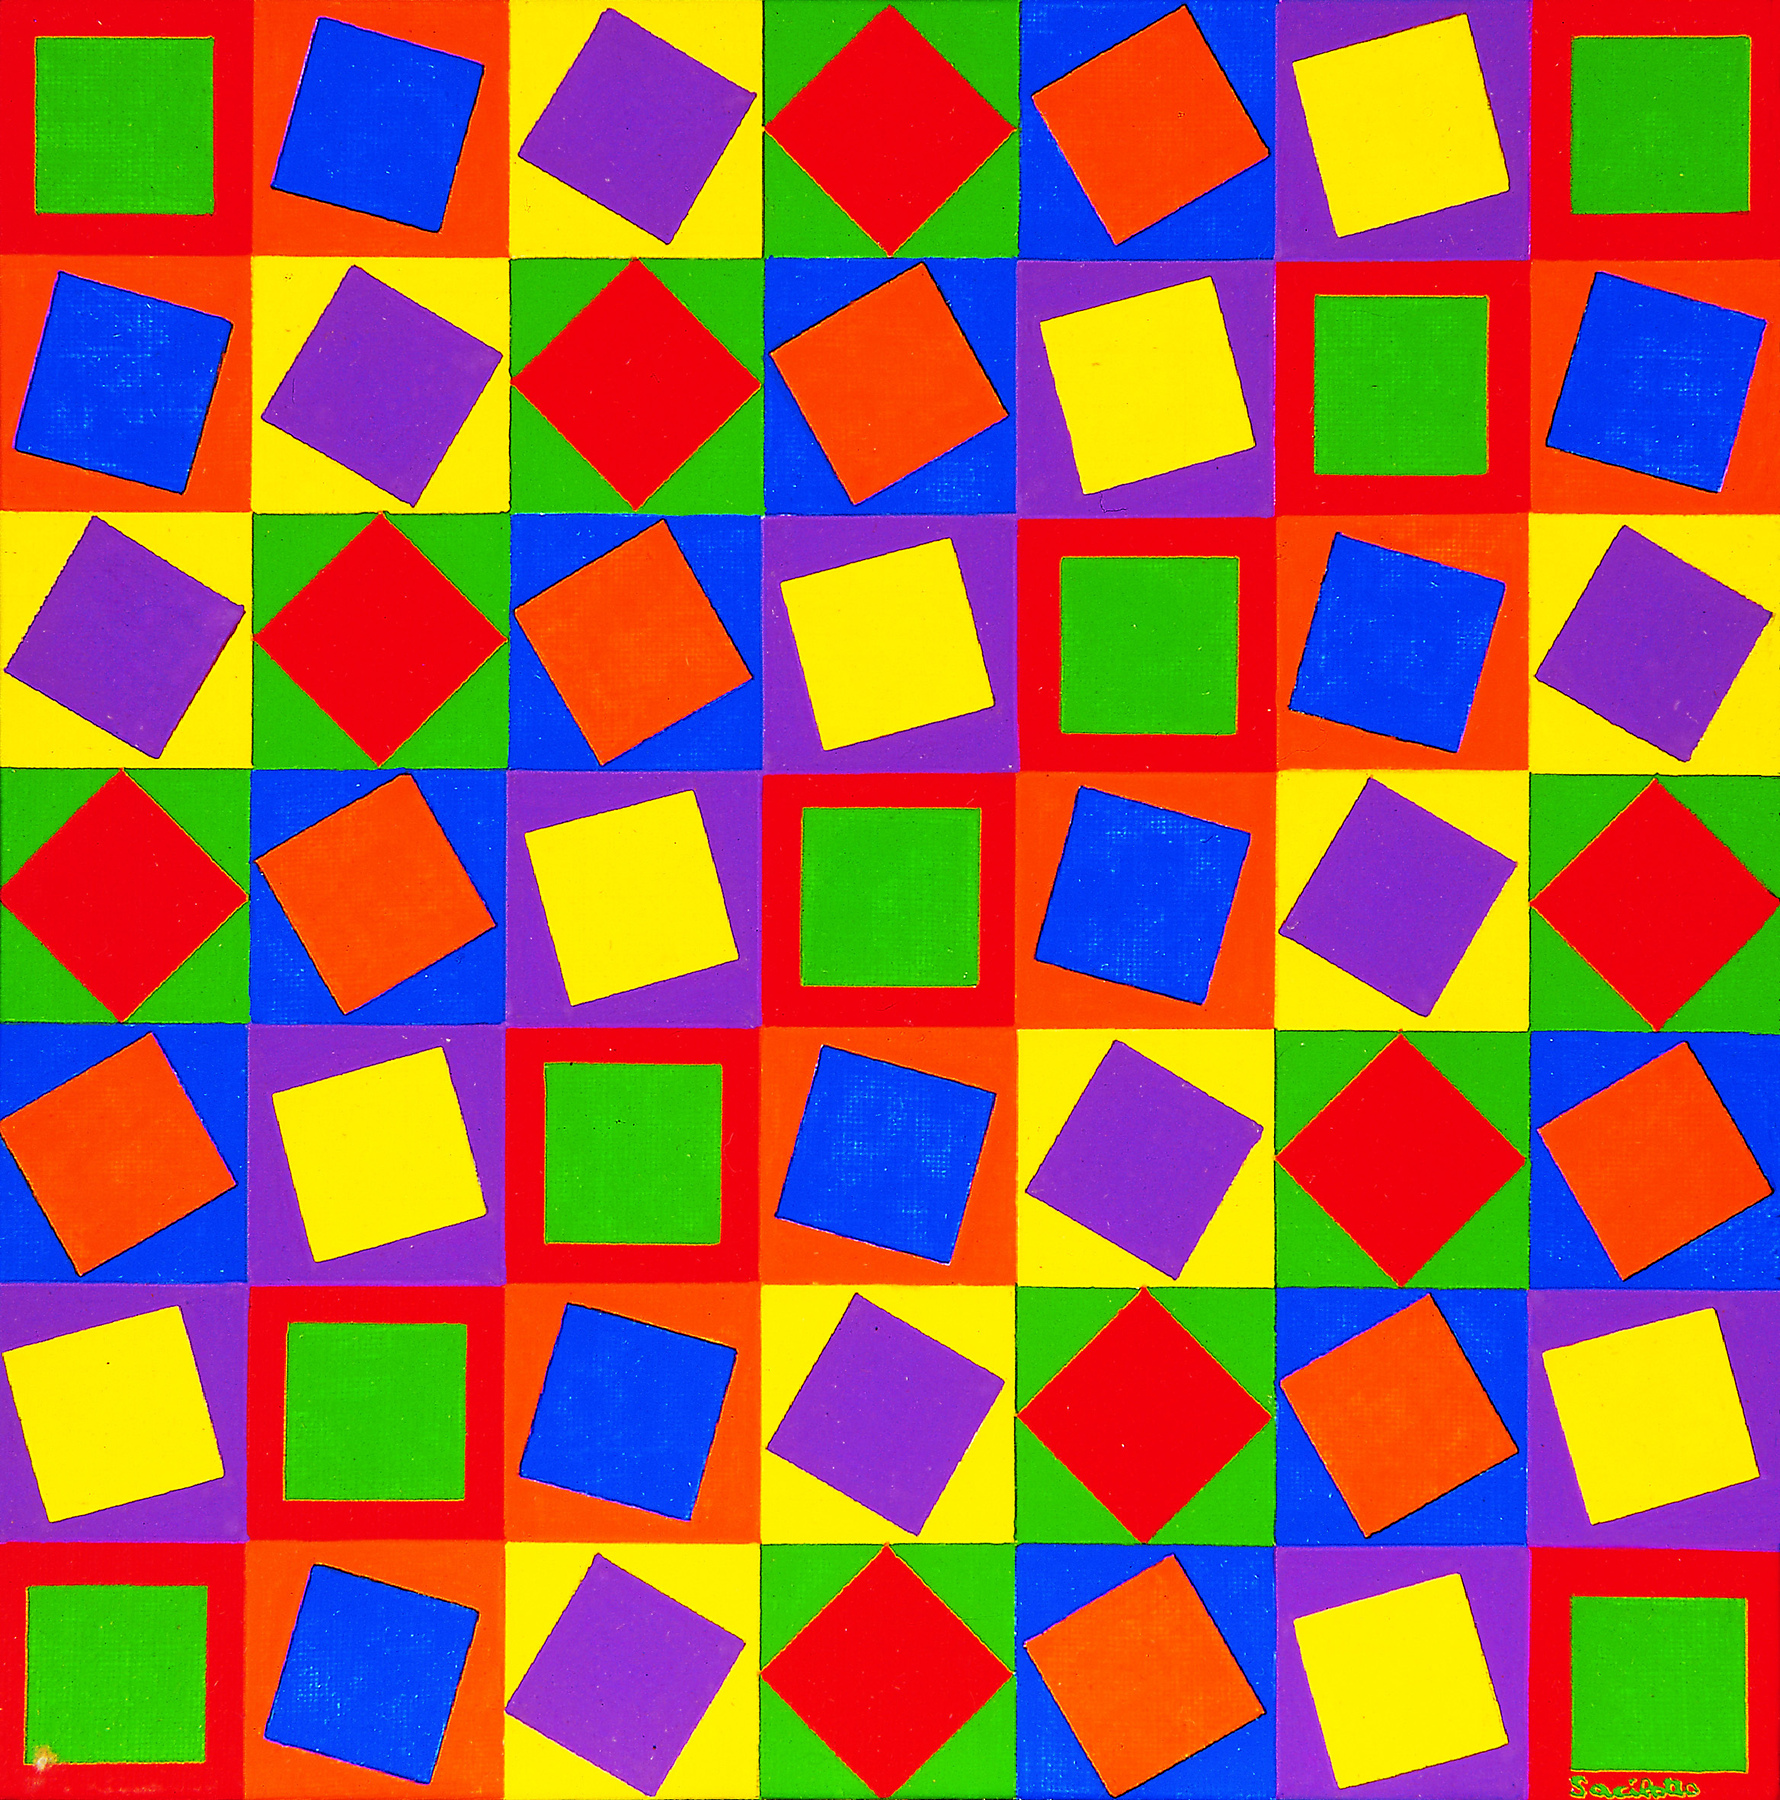 Fotografia. Quadro com formato de quadrado composto por sete fileiras e sete colunas de outros quadrados coloridos. O fundo de cada um desses quadrados tem uma cor e há outro quadrado sobreposto em diferentes posições com outra cor.